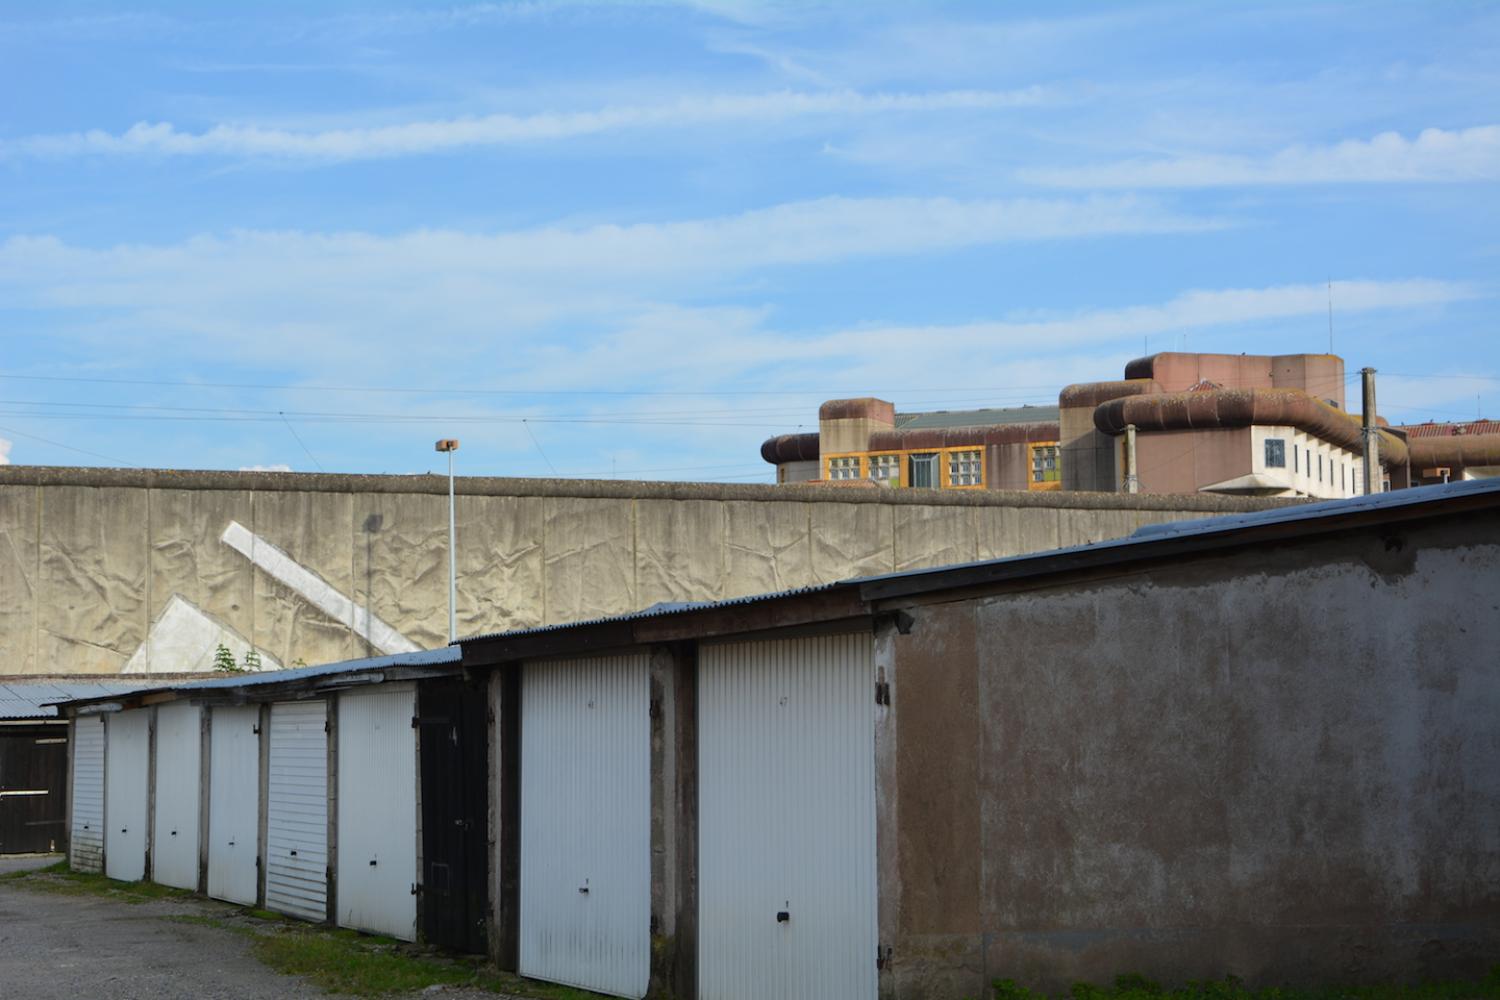 Les lanceurs profitent des garages installés près du mur d'enceinte de la prison pour prendre leur élan.